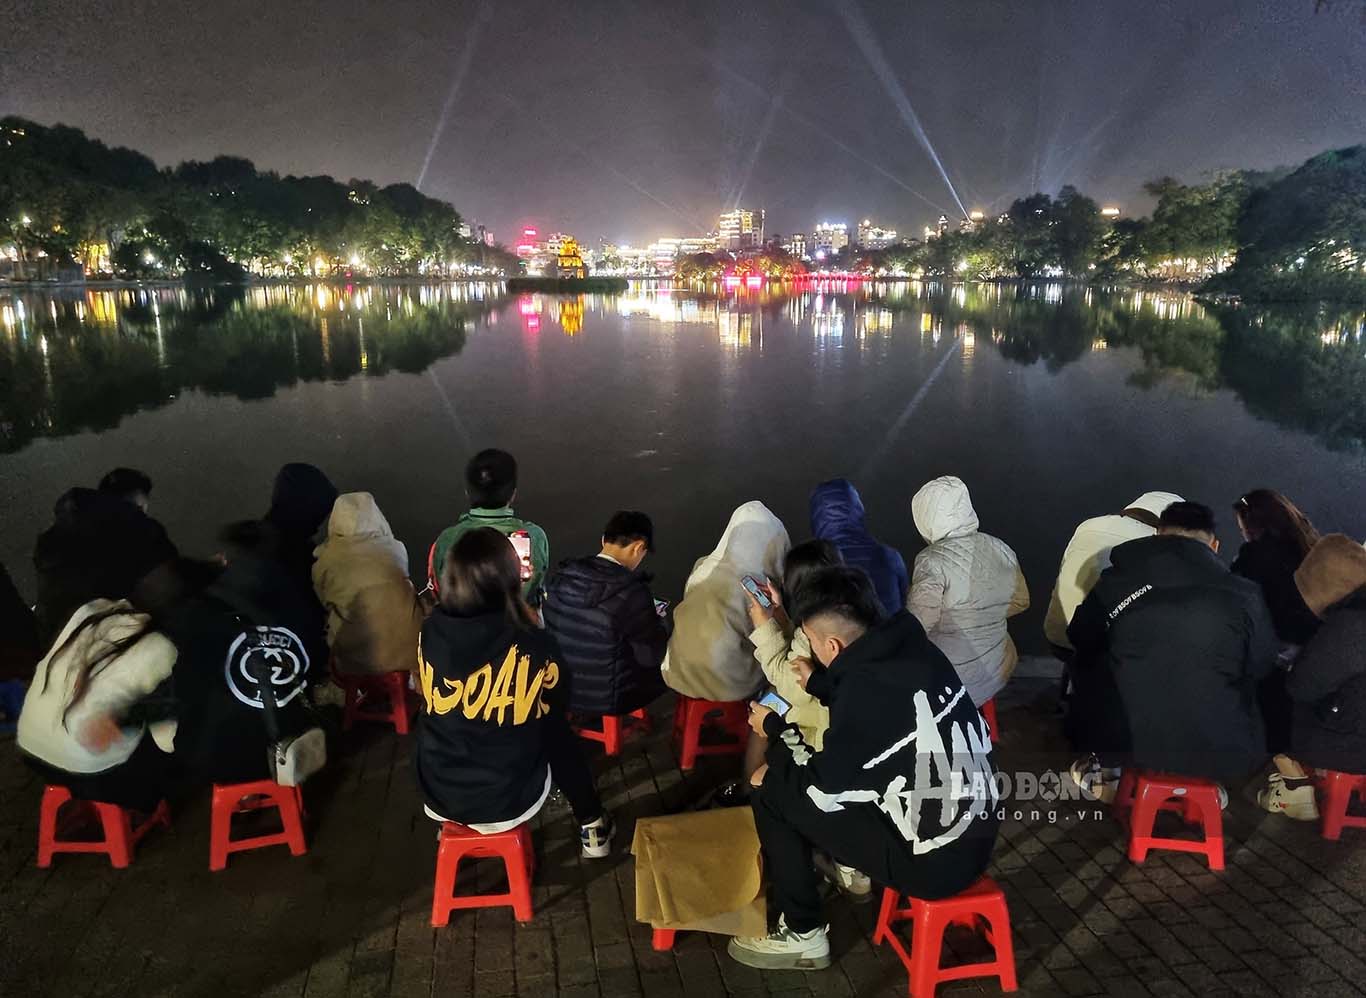 Người dân tìm cho mình chỗ ngồi đẹp nhất quanh khu vực Hồ Gươm để ngắm pháo hoa. Một số người dân đã mang ghế nhựa ra cho thuê với giá khoảng 50.000 đồng/ghế.